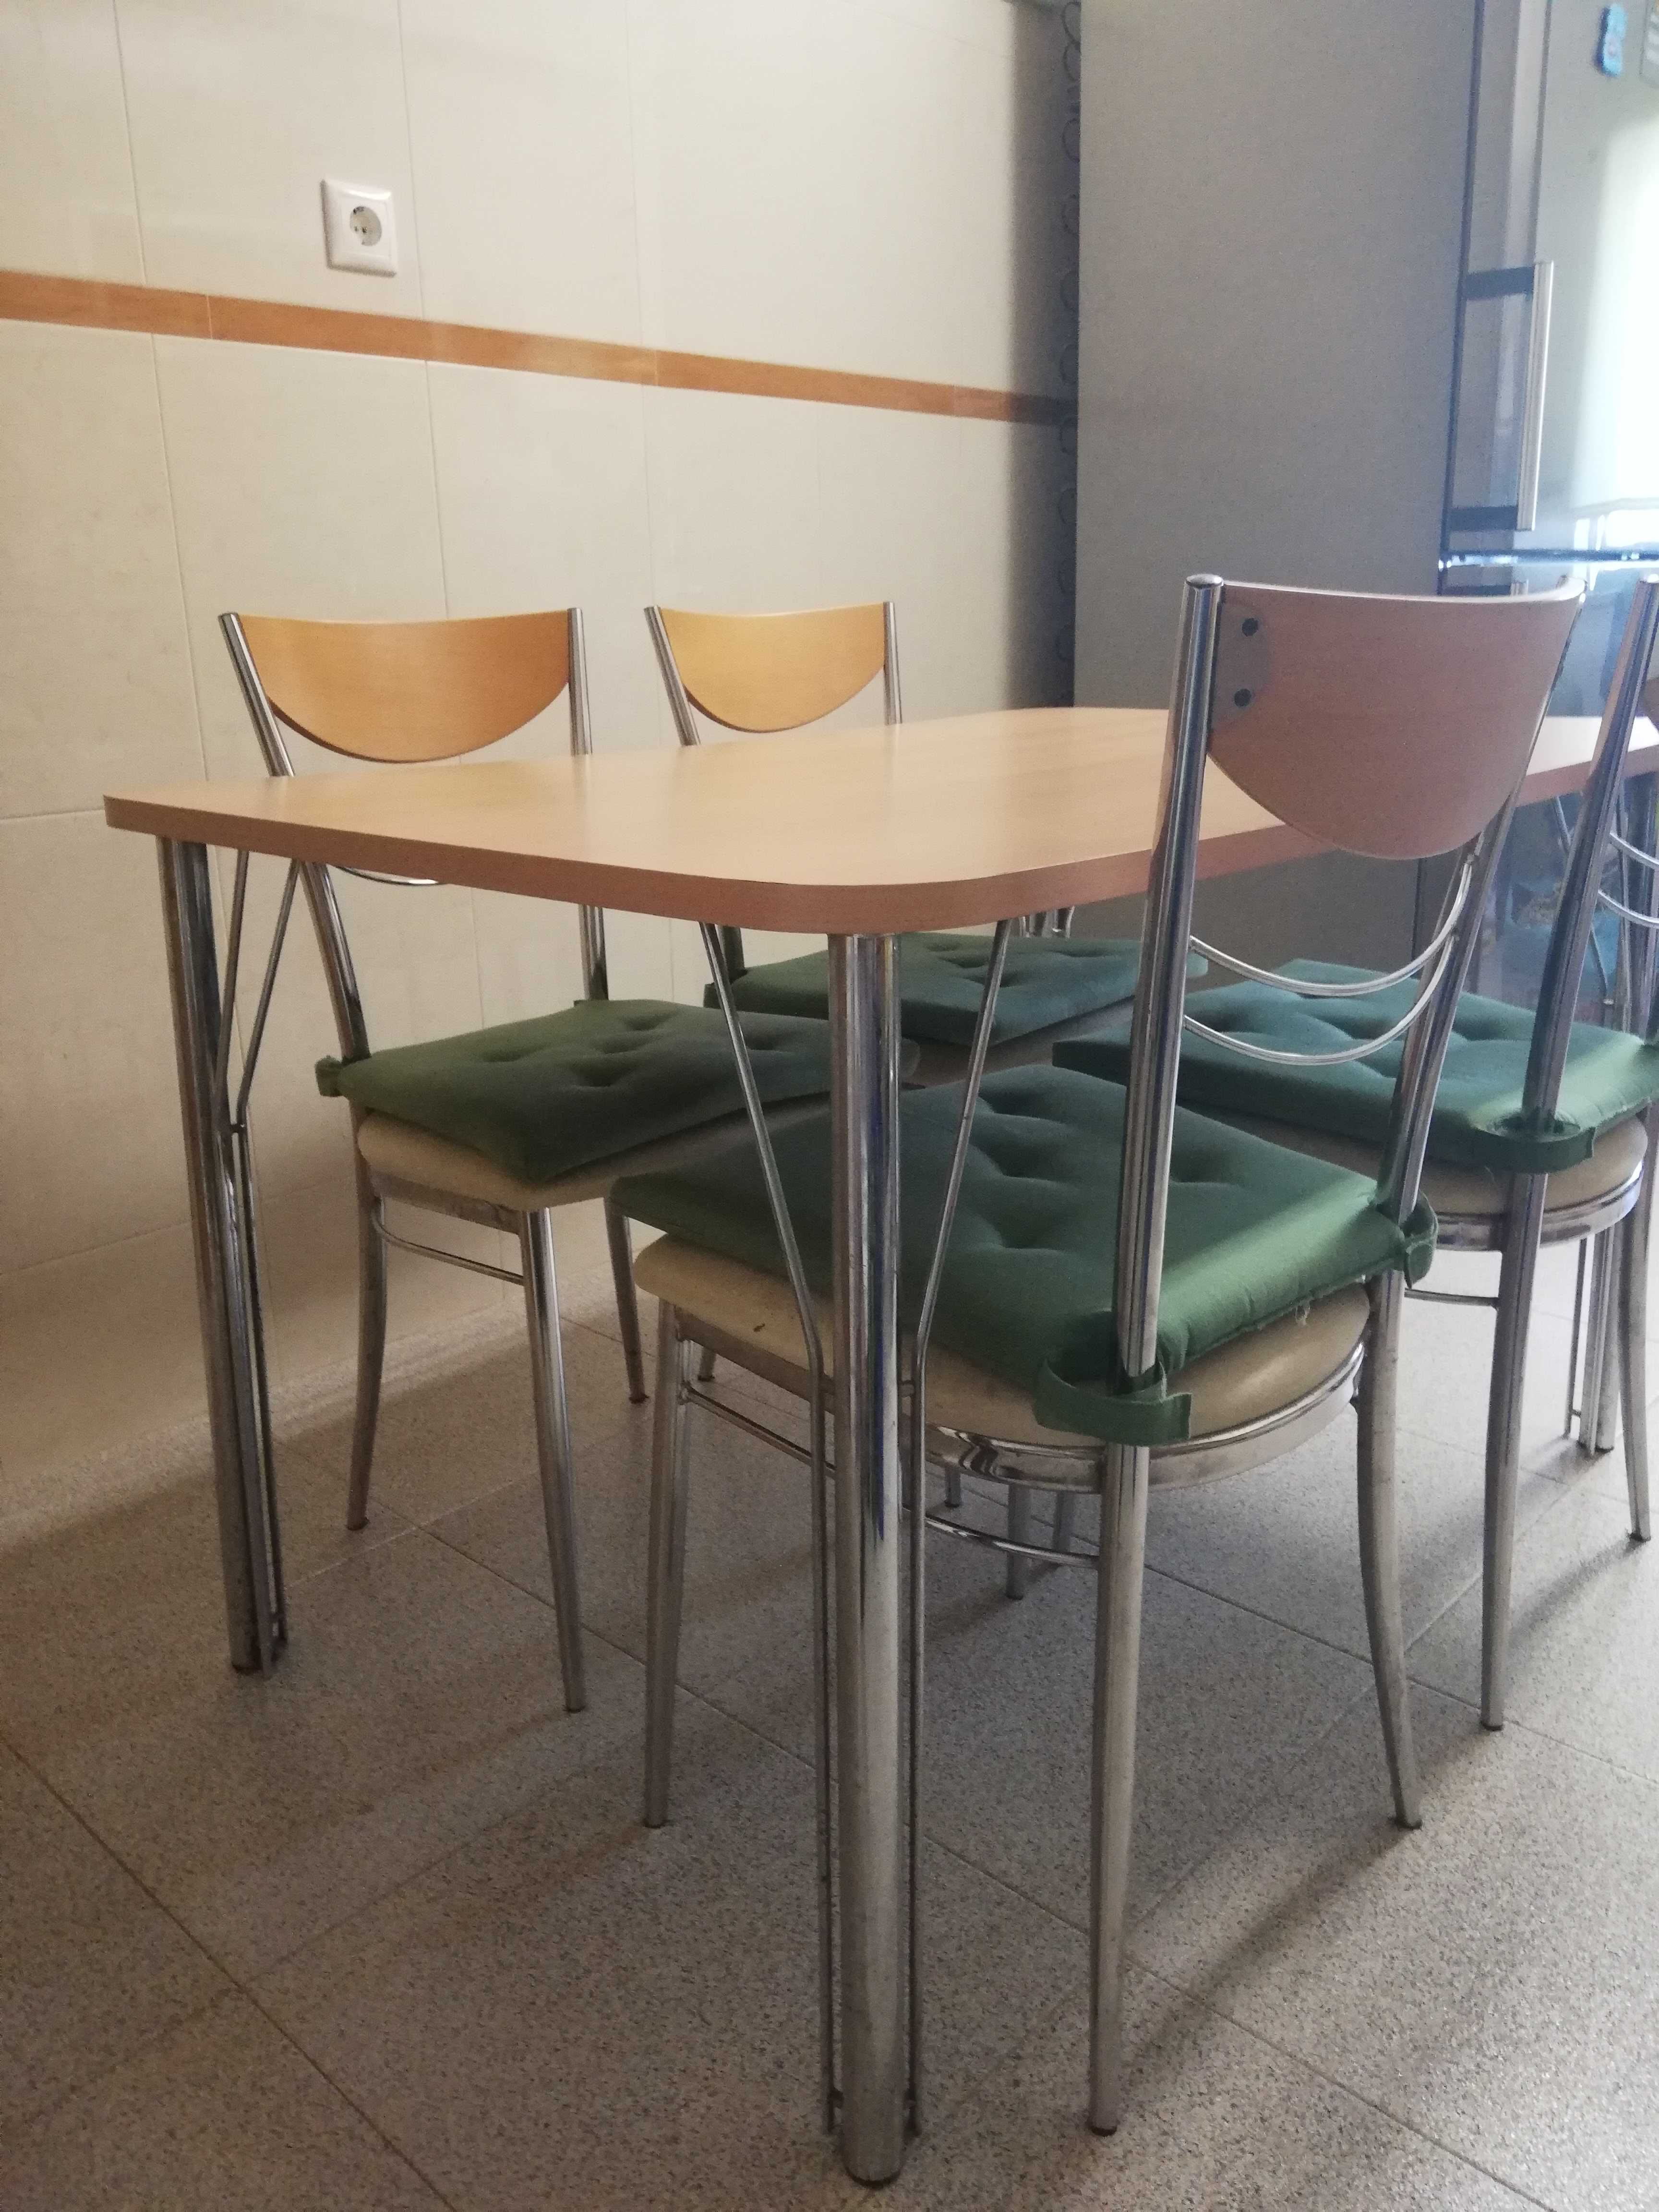 4 cadeiras de metal com encosto madeira